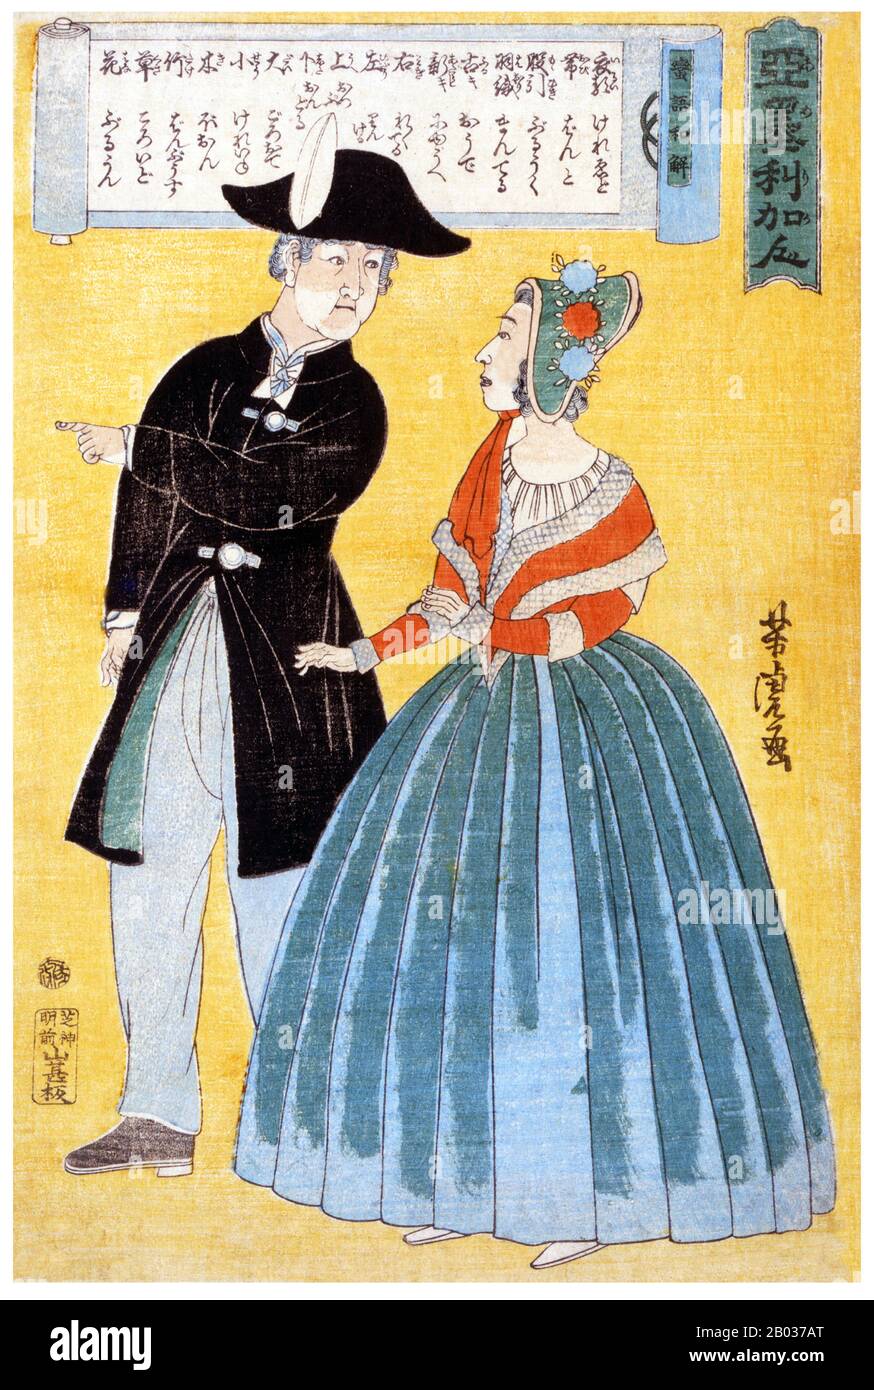 Stampa in legno giapponese che mostra una coppia americana che conversa; la loro conversazione è tradotta in giapponese. Utagawa Yoshitora è stato un designer di stampe di blocchi di legno giapponesi ukiyo-e e un illustratore di libri e giornali che è stato attivo da circa 1850 a circa 1880. È nato a Edo (Tokyo moderna), ma non si conosce né la data di nascita né la data di morte. Fu il più antico allievo di Utagawa Kuniyoshi che eccelleva nelle stampe di guerrieri, attori kabuki, belle donne e stranieri (Yokohama-e). Foto Stock